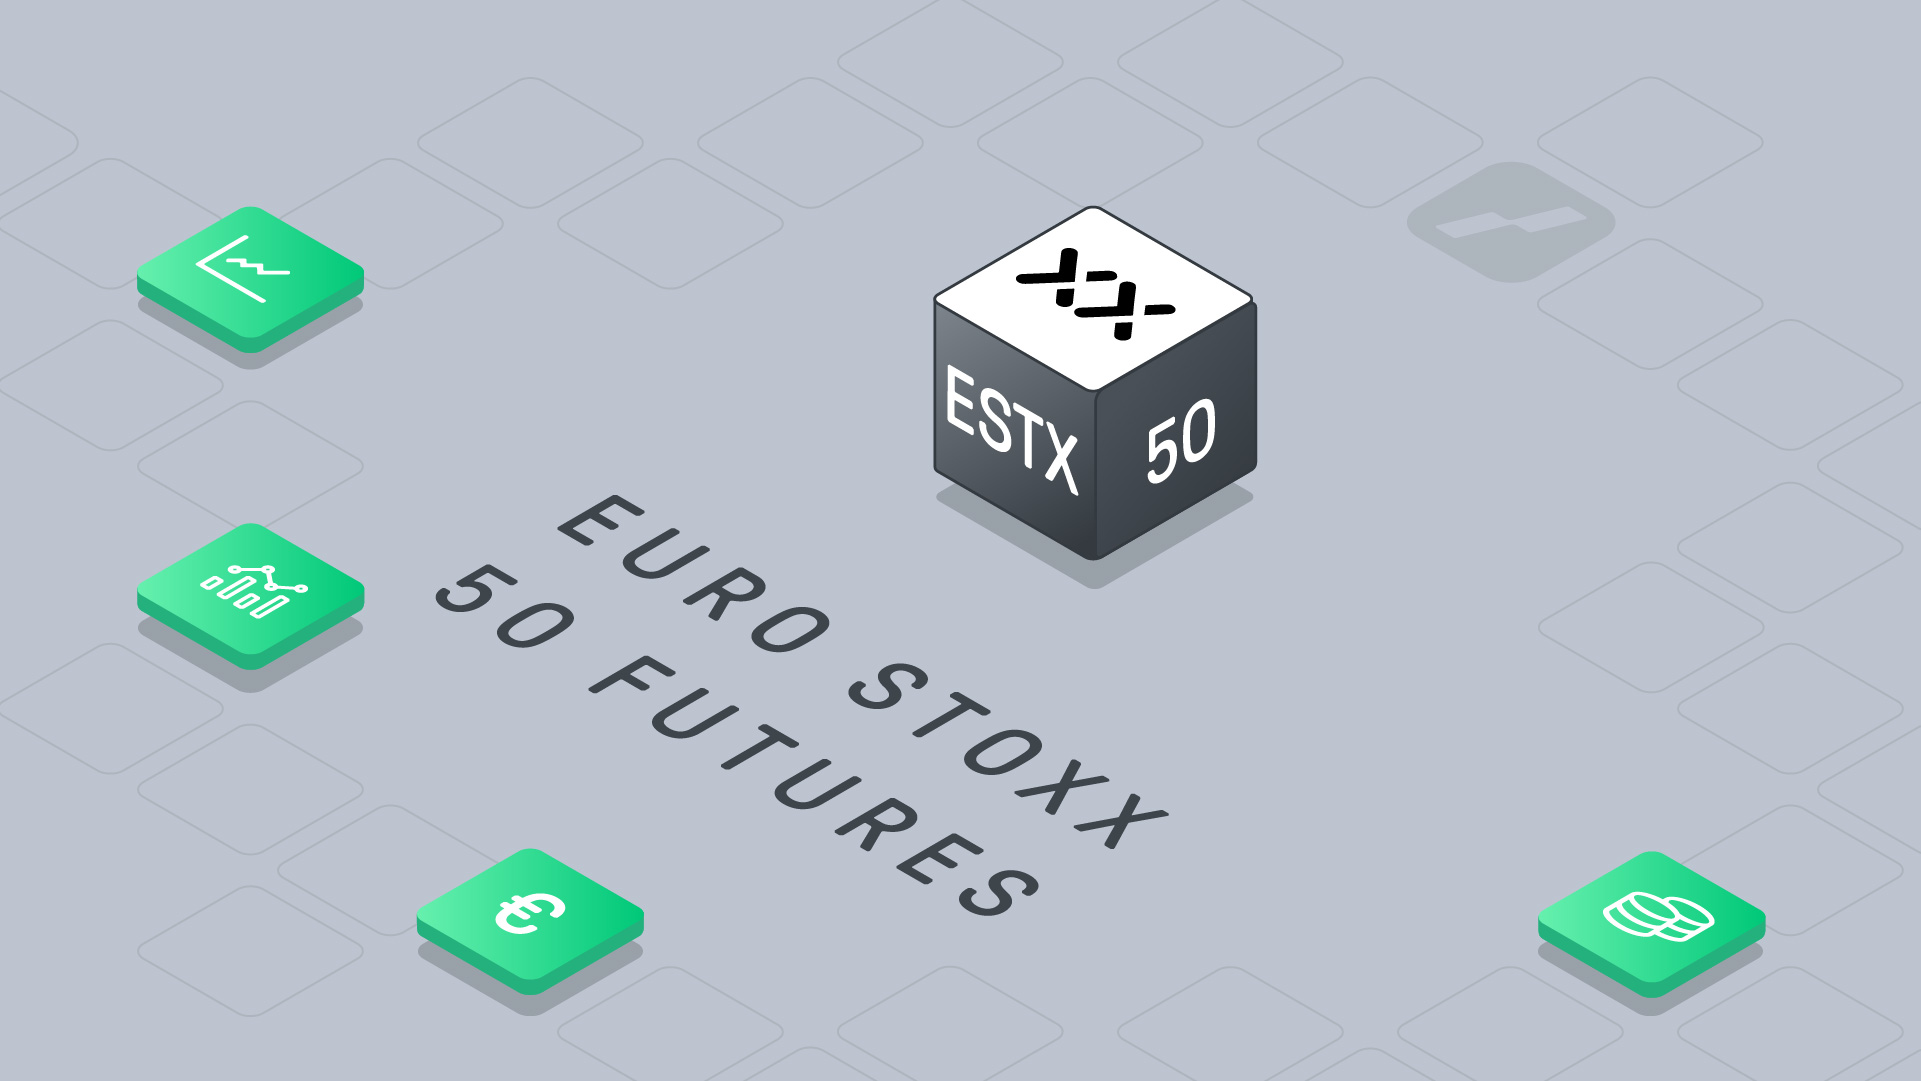 Euro Stoxx 50 future live trading - ESTX50 - Micro Euro Stoxx 50 future